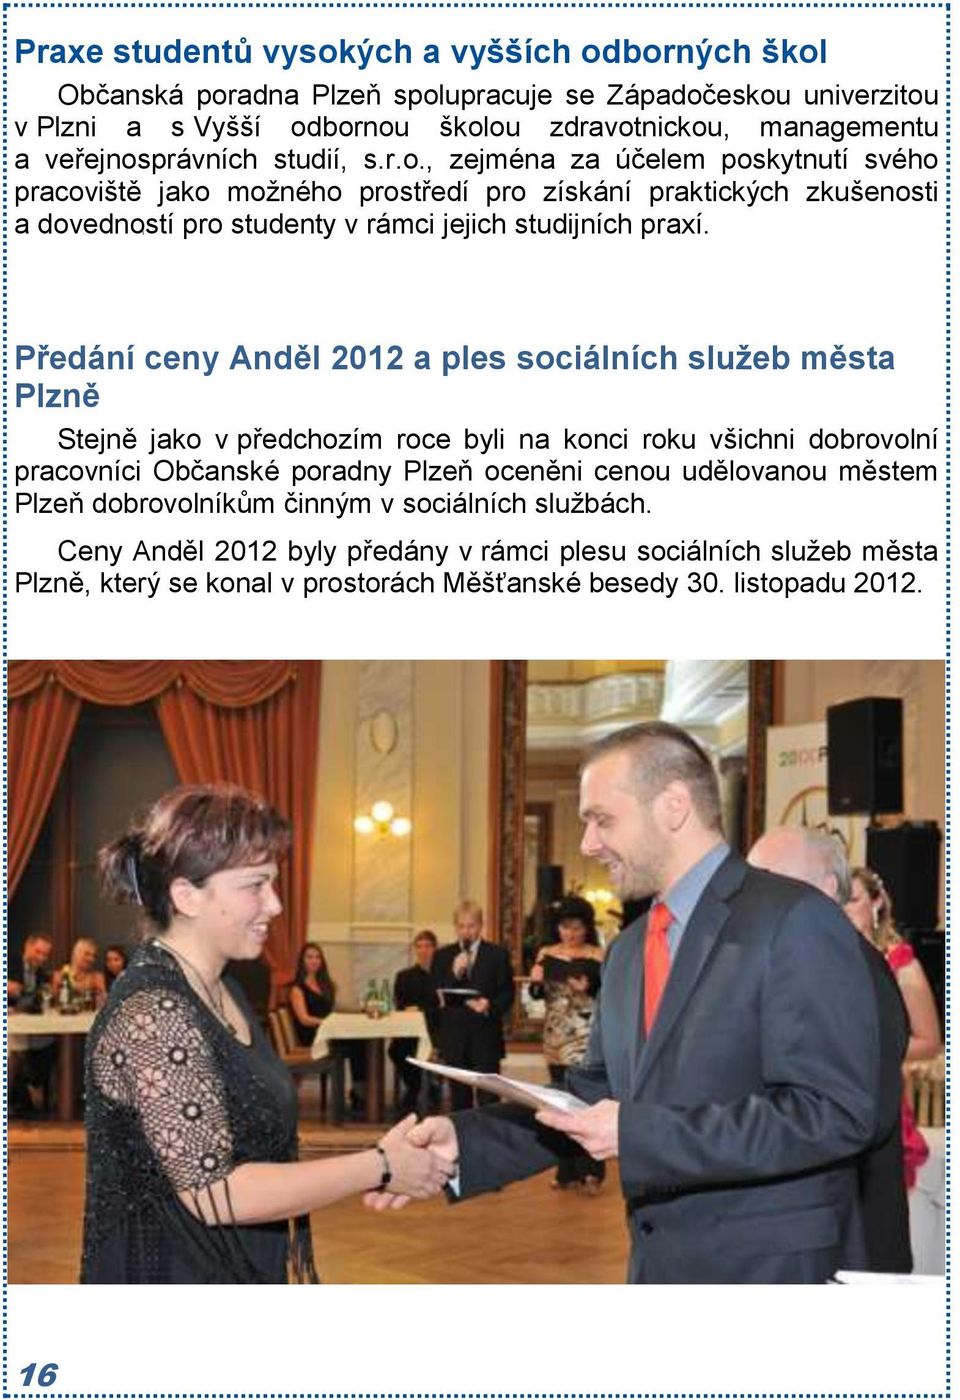 Předání ceny Anděl 2012 a ples sociálních služeb města Plzně Stejně jako v předchozím roce byli na konci roku všichni dobrovolní pracovníci Občanské poradny Plzeň oceněni cenou udělovanou